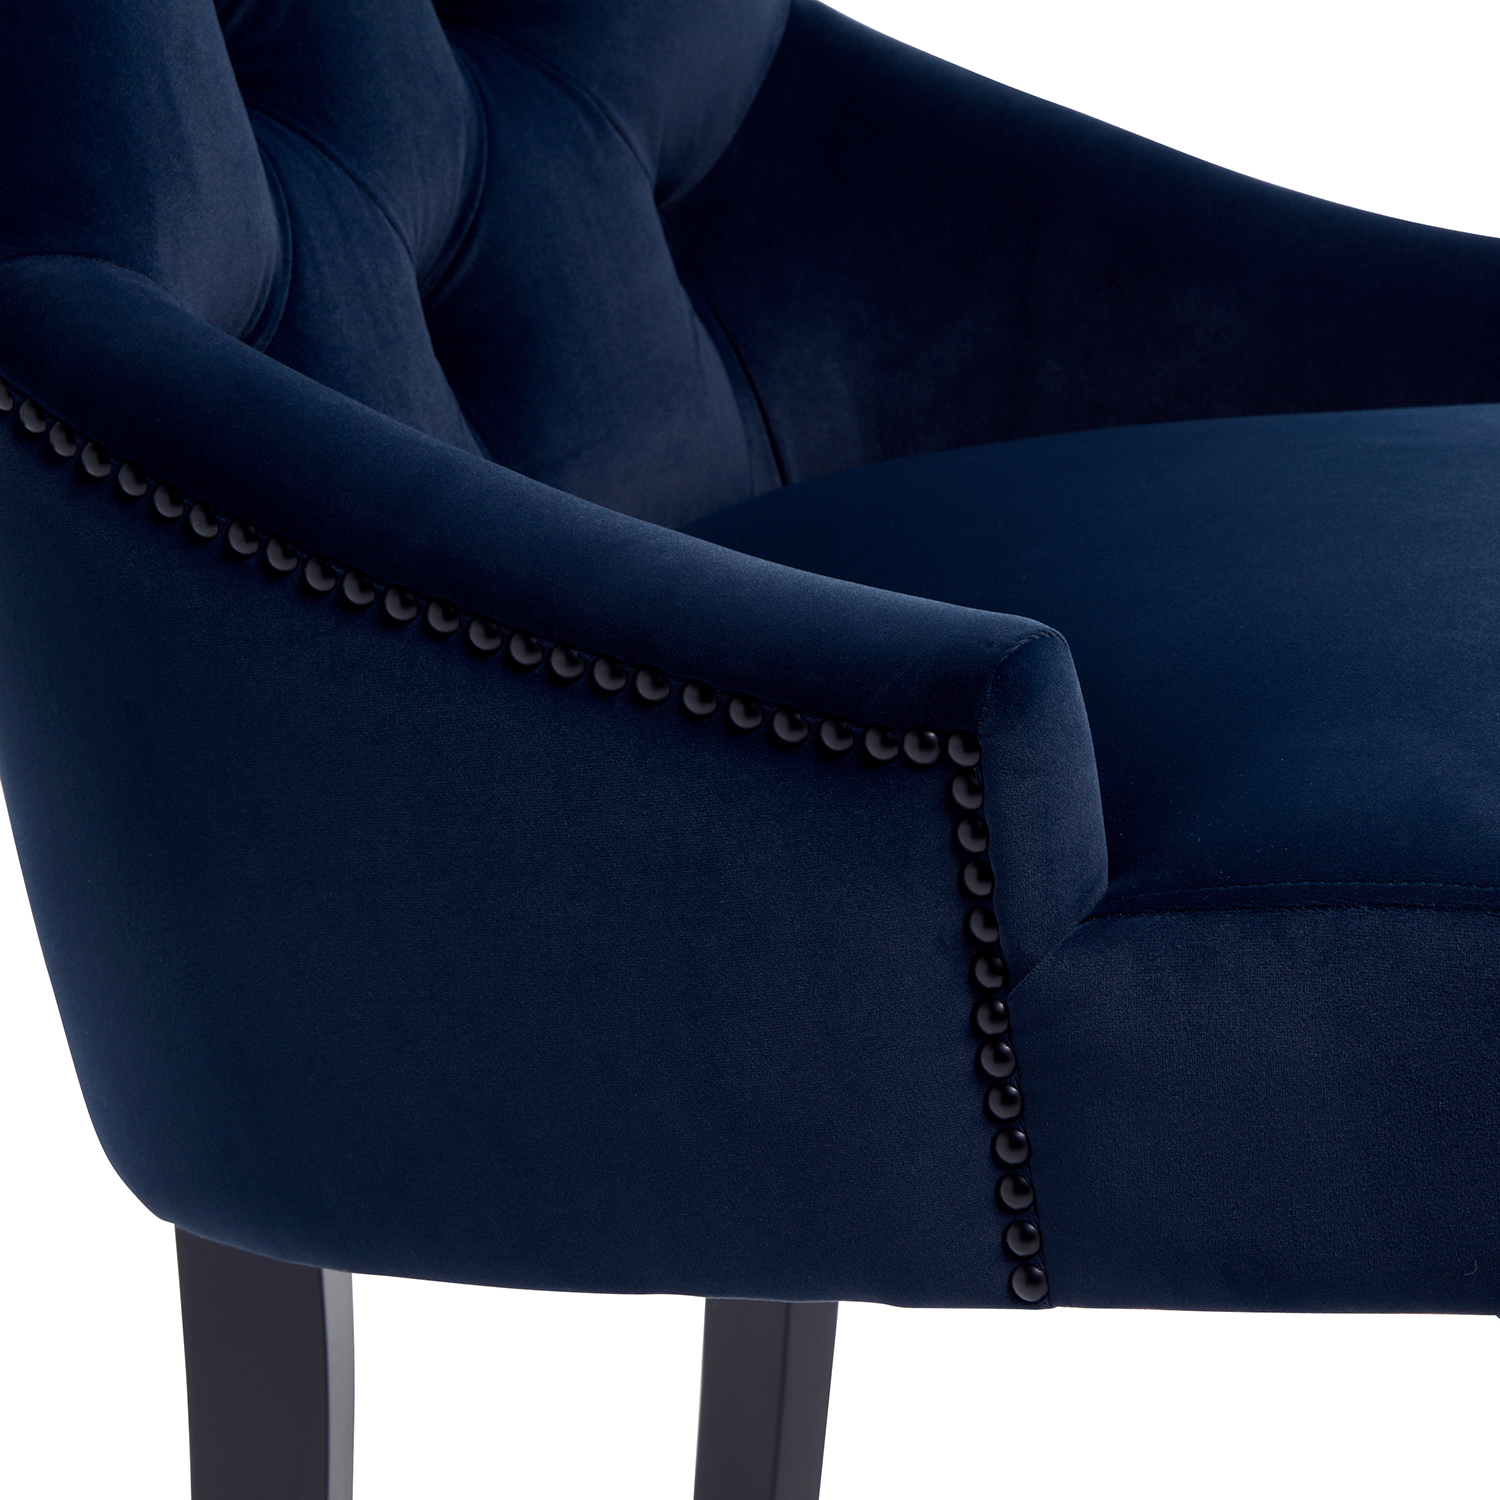 New Chelsea Dark Blue Brushed Velvet Scoop Back Dining Chair Black Studs